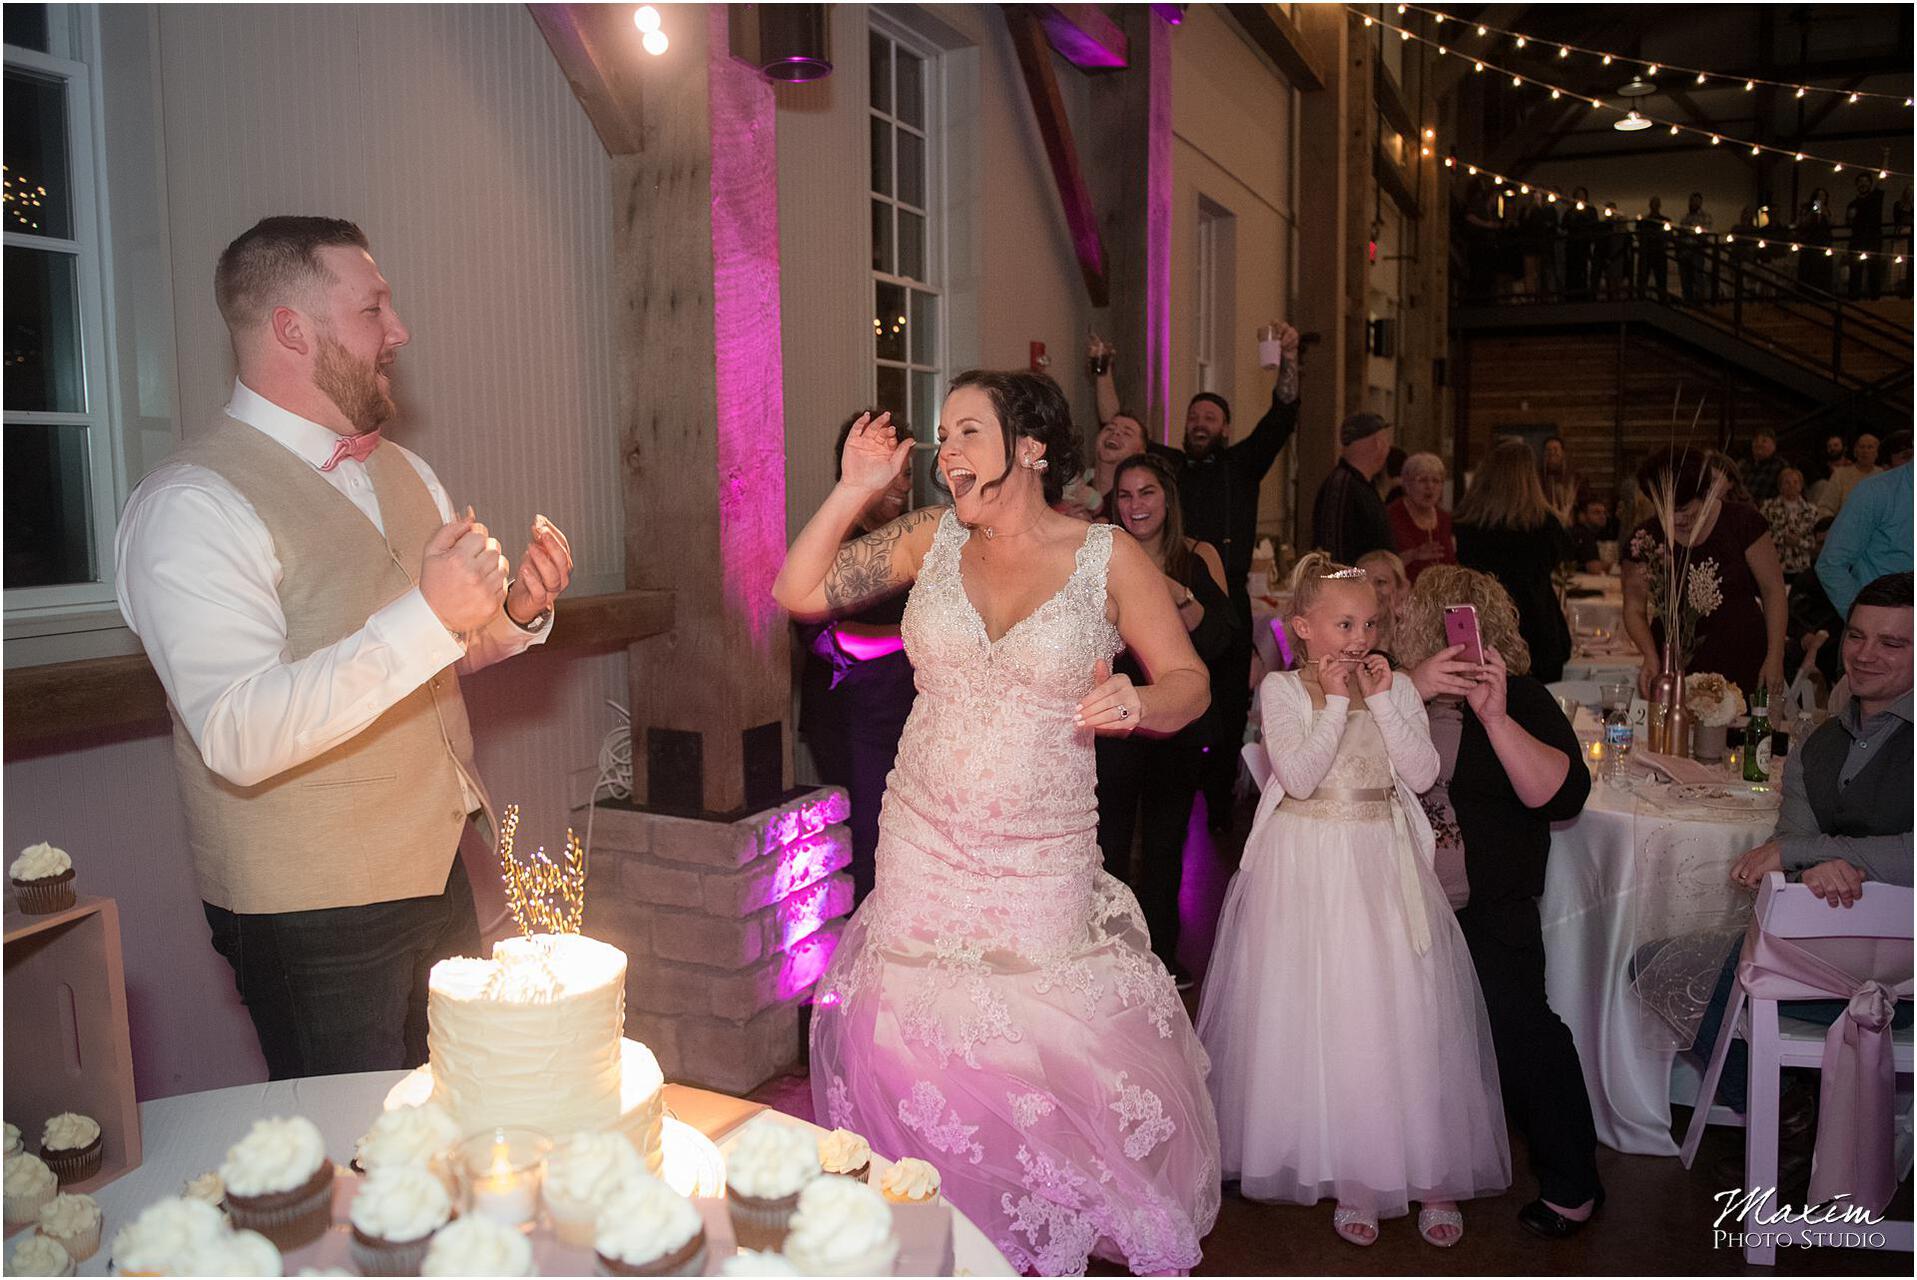 Muhlhauser Barn Wedding Reception Cake Gender Reveal